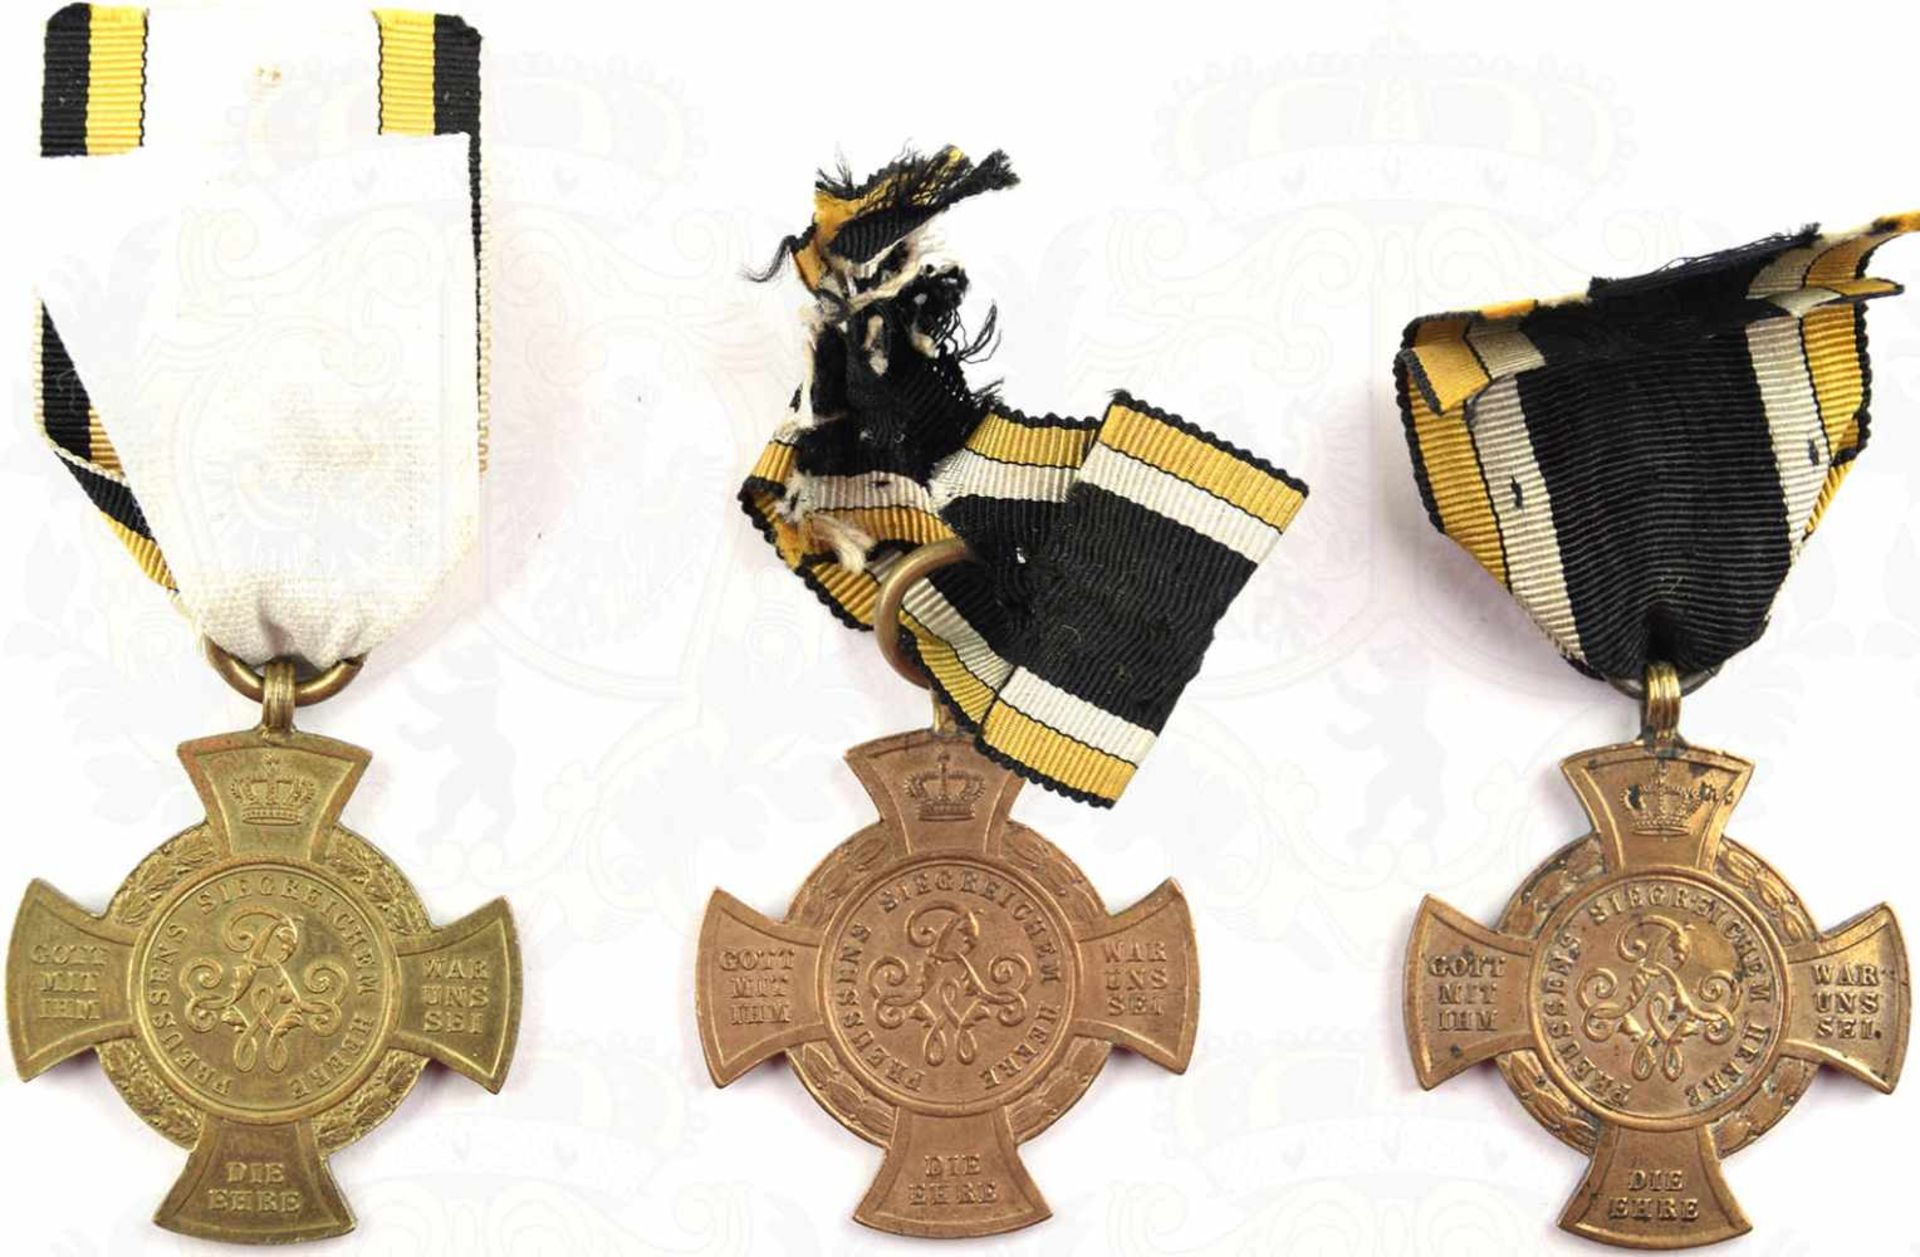 3 ERINNERUNGSKREUZE 1866, Mainarmee; Treuen Kriegern; Pflichttreue im Kriege, alle Bronze, an - Image 2 of 2